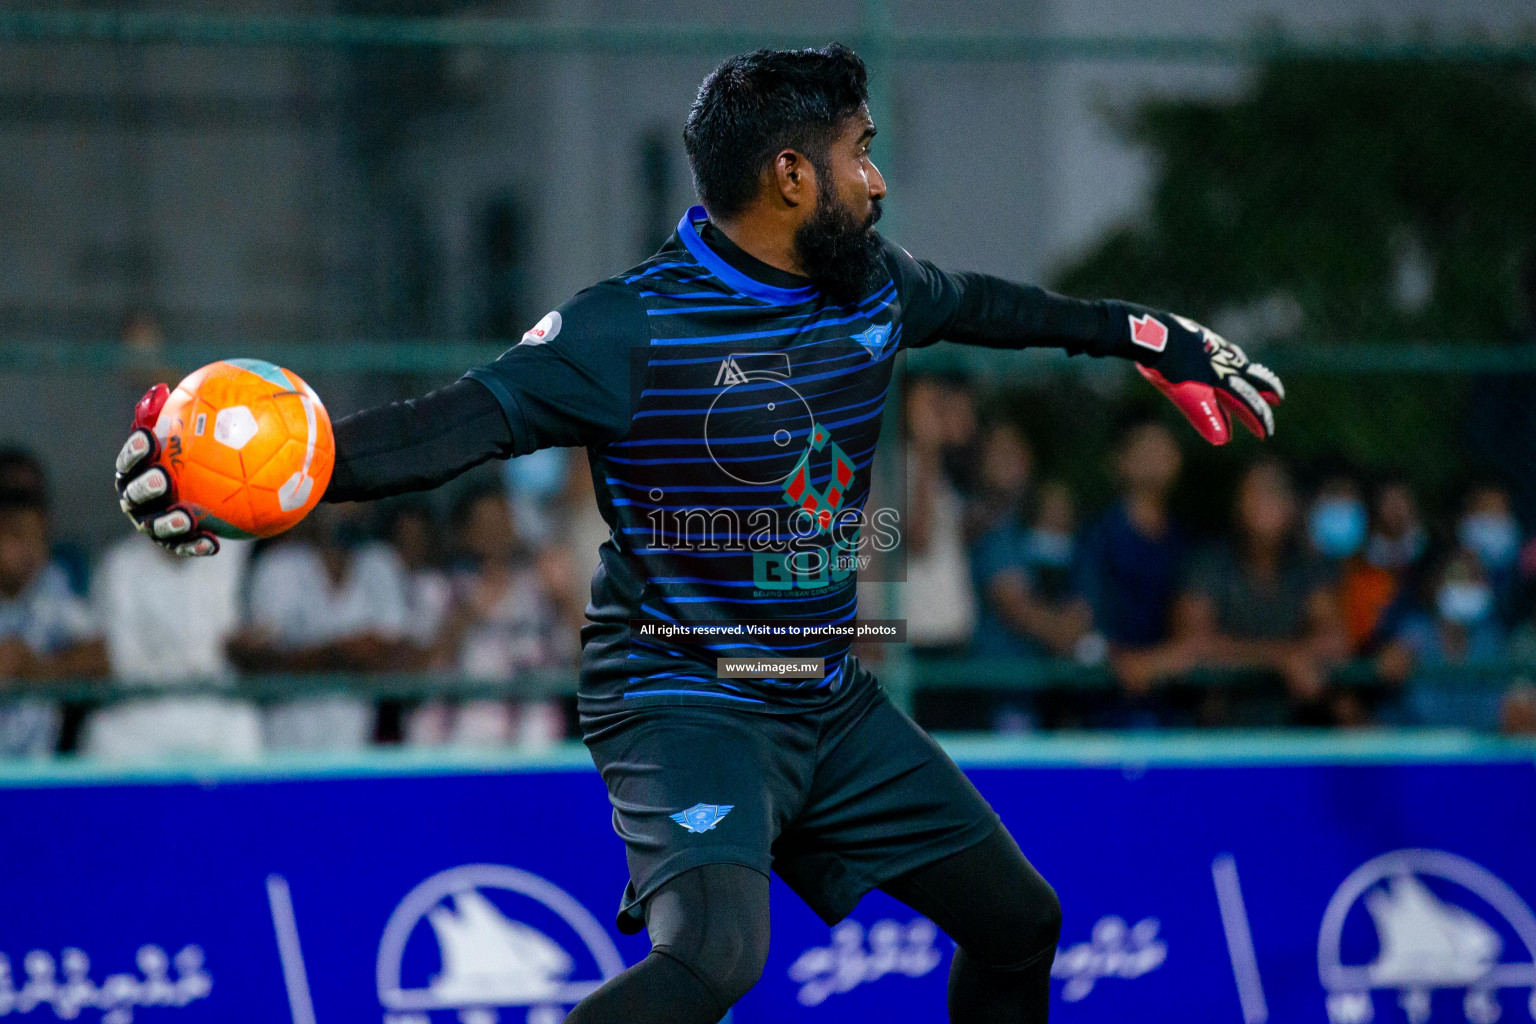 Club Maldives Day 6 - 26th November 2021, at Hulhumale. Photos by Shuu Abdul Sattar/ Images.mv